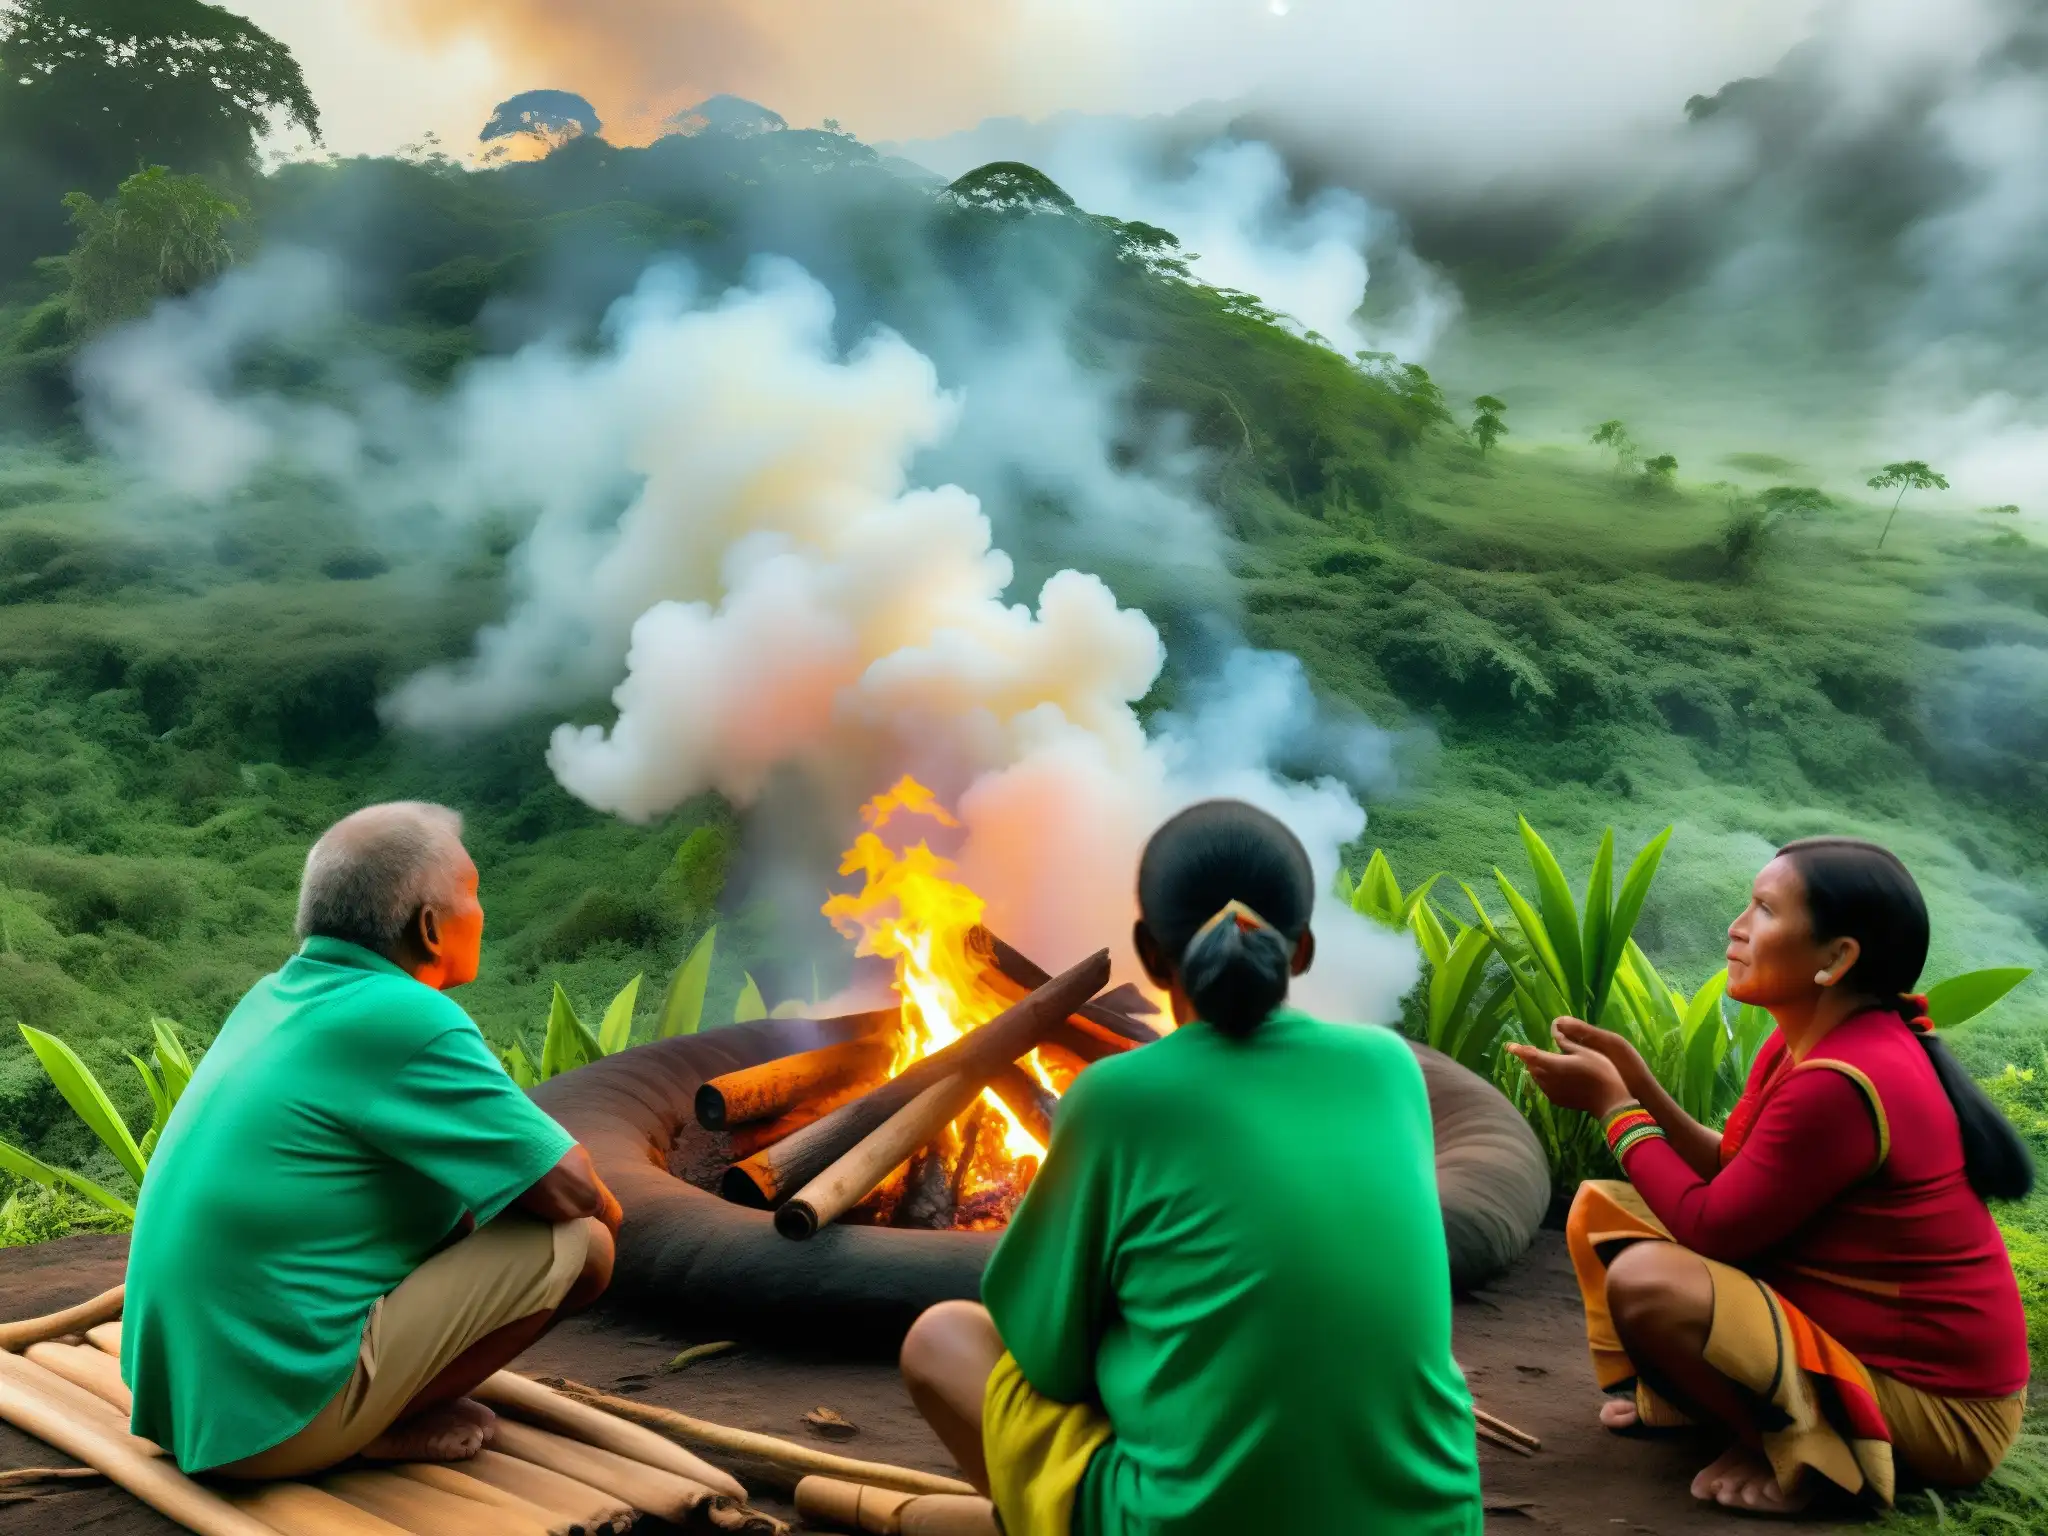 Una escena mística en la selva ecuatoriana con los Kichwa escuchando historias de El tesoro mítico de las iguanas de oro